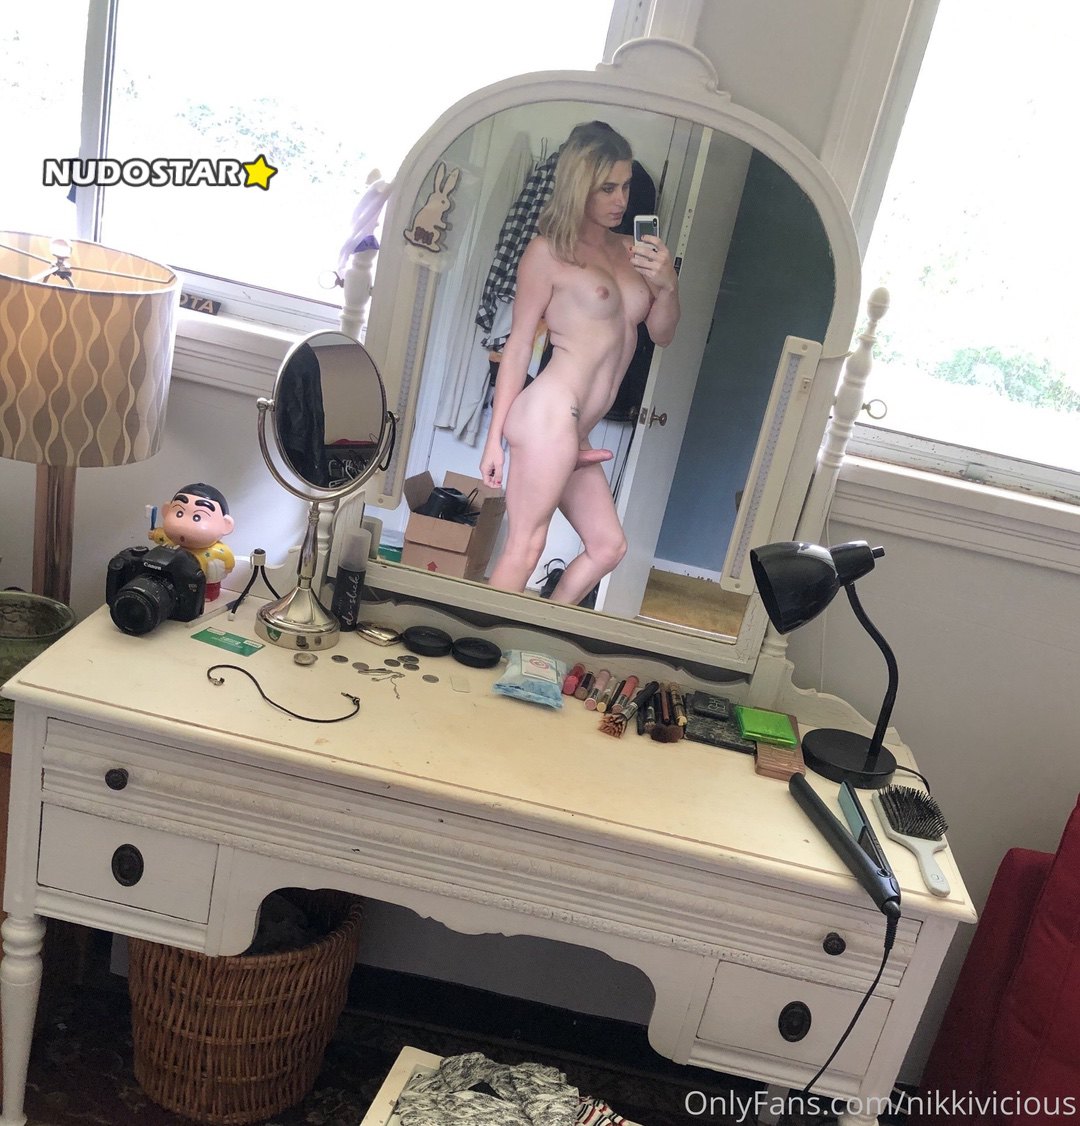 [TS] Nikki Vicious aka nikkivicious Onlyfans Nudes Leaks (272 photos + 3 videos)